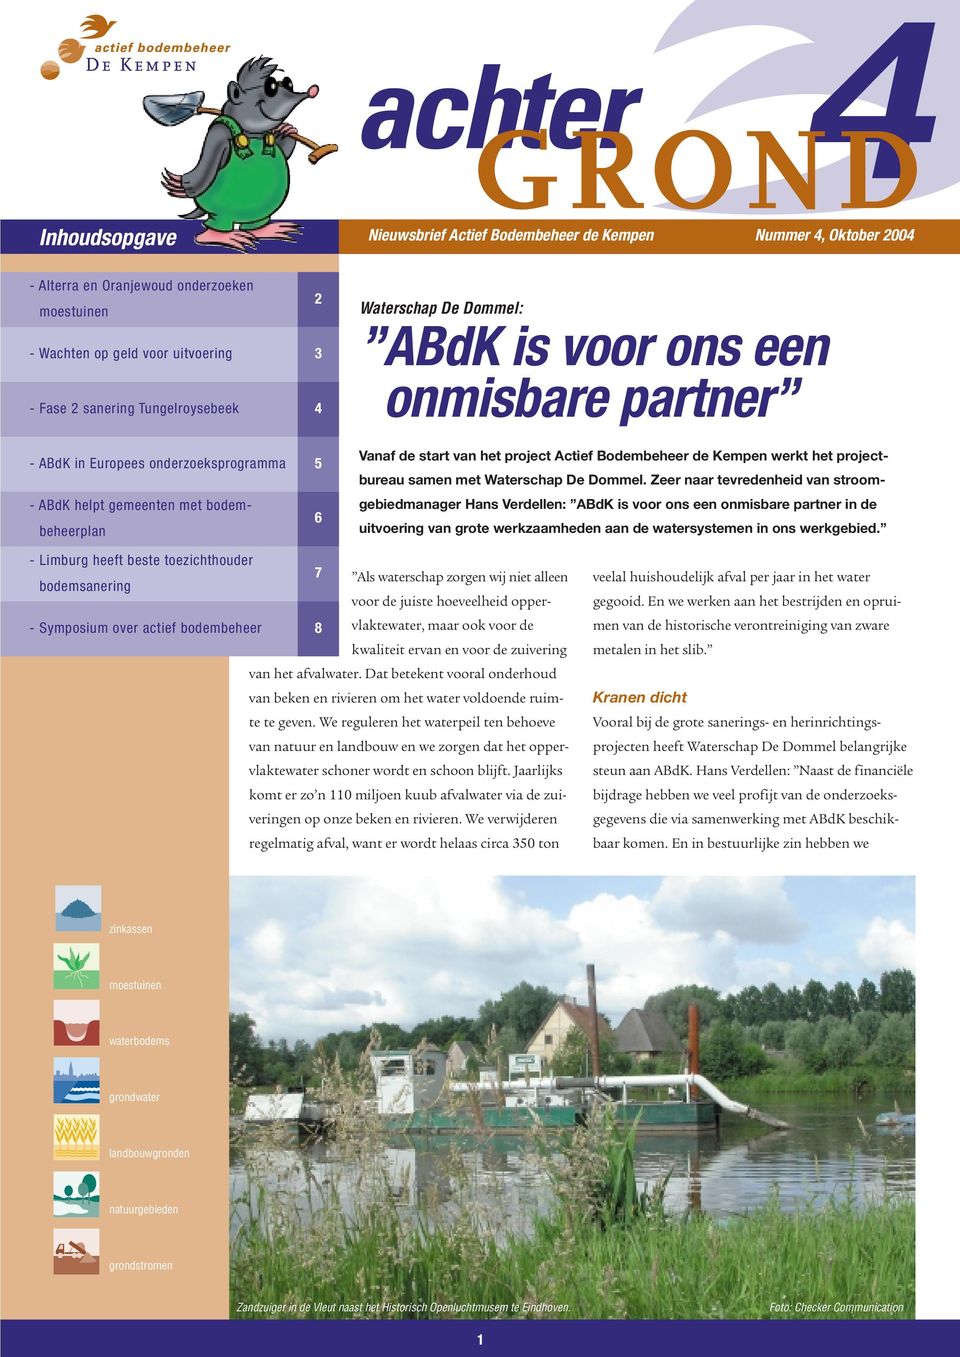 Bodembeheer de Kempen werkt het projectbureau samen met Waterschap De Dommel.